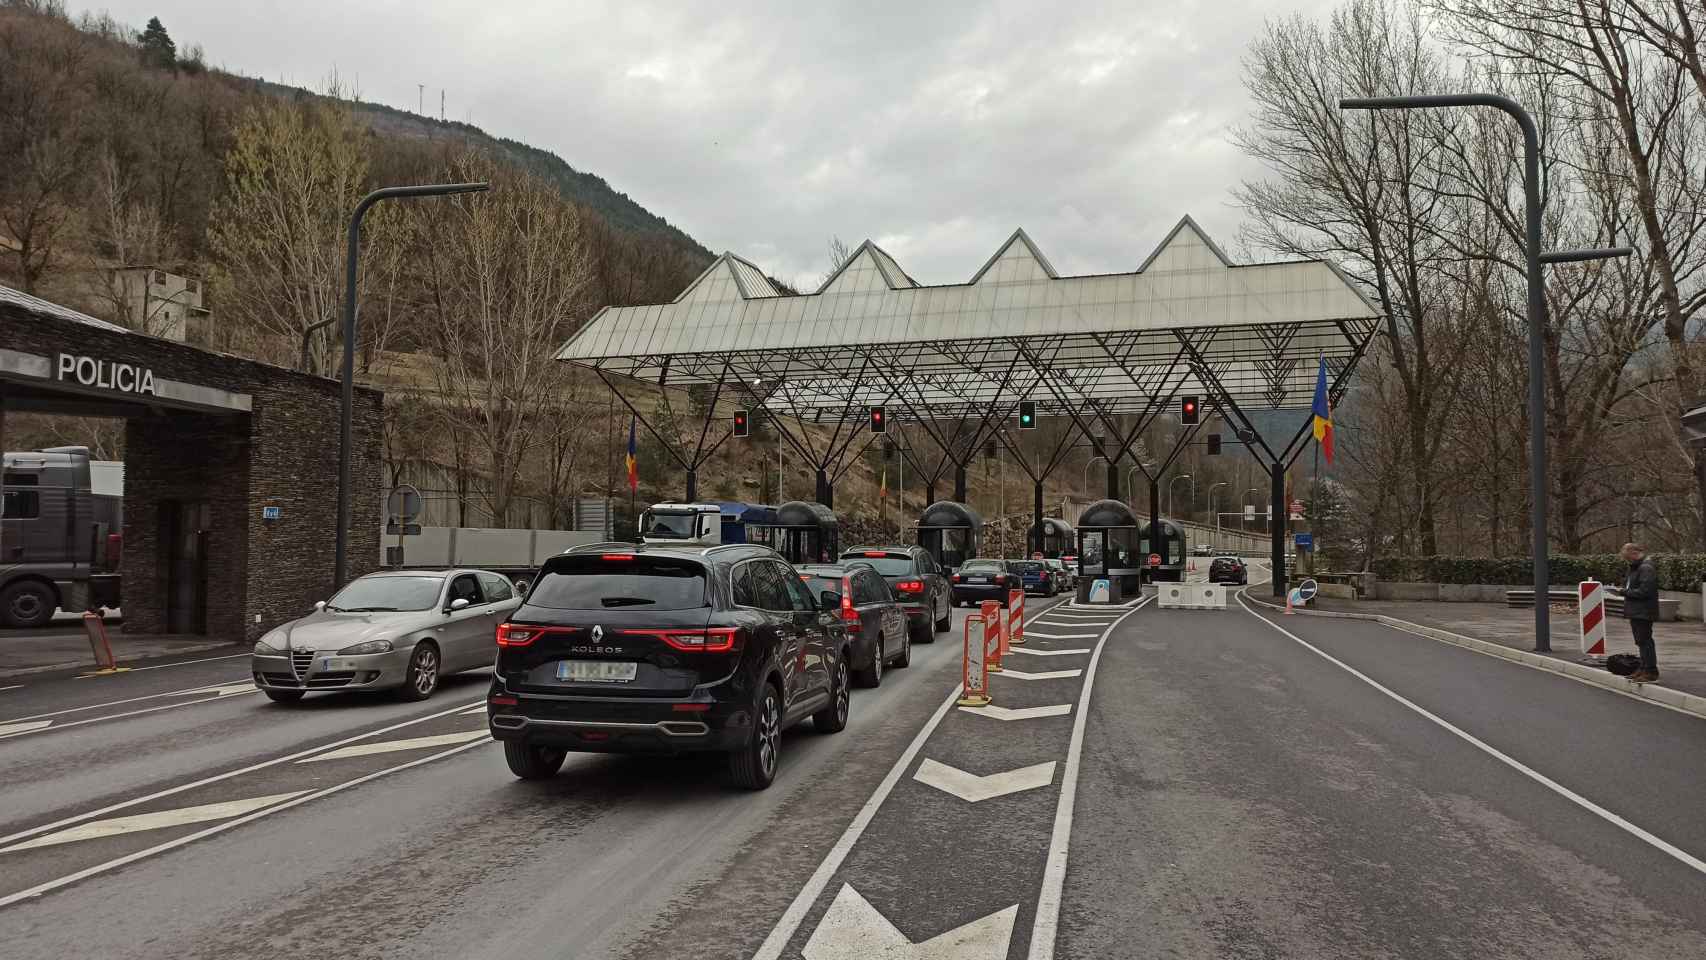 Paso fronterizo con Andorra, donde fue detenido el hombre acusado de secuestro de sus cuatro hijos / EUROPA PRESS